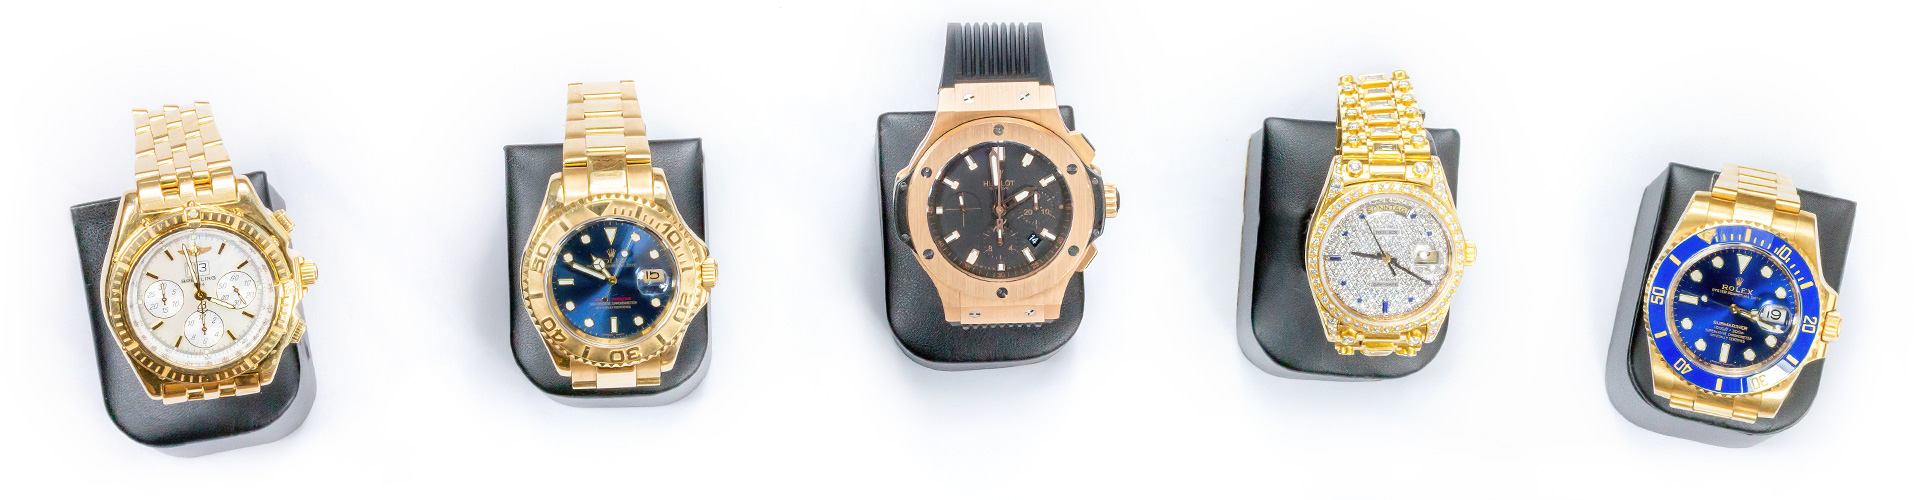 5 goldene Uhren der Marken Rolex, Hublot und Breitling mit unterschiedlich verzierten Lünetten